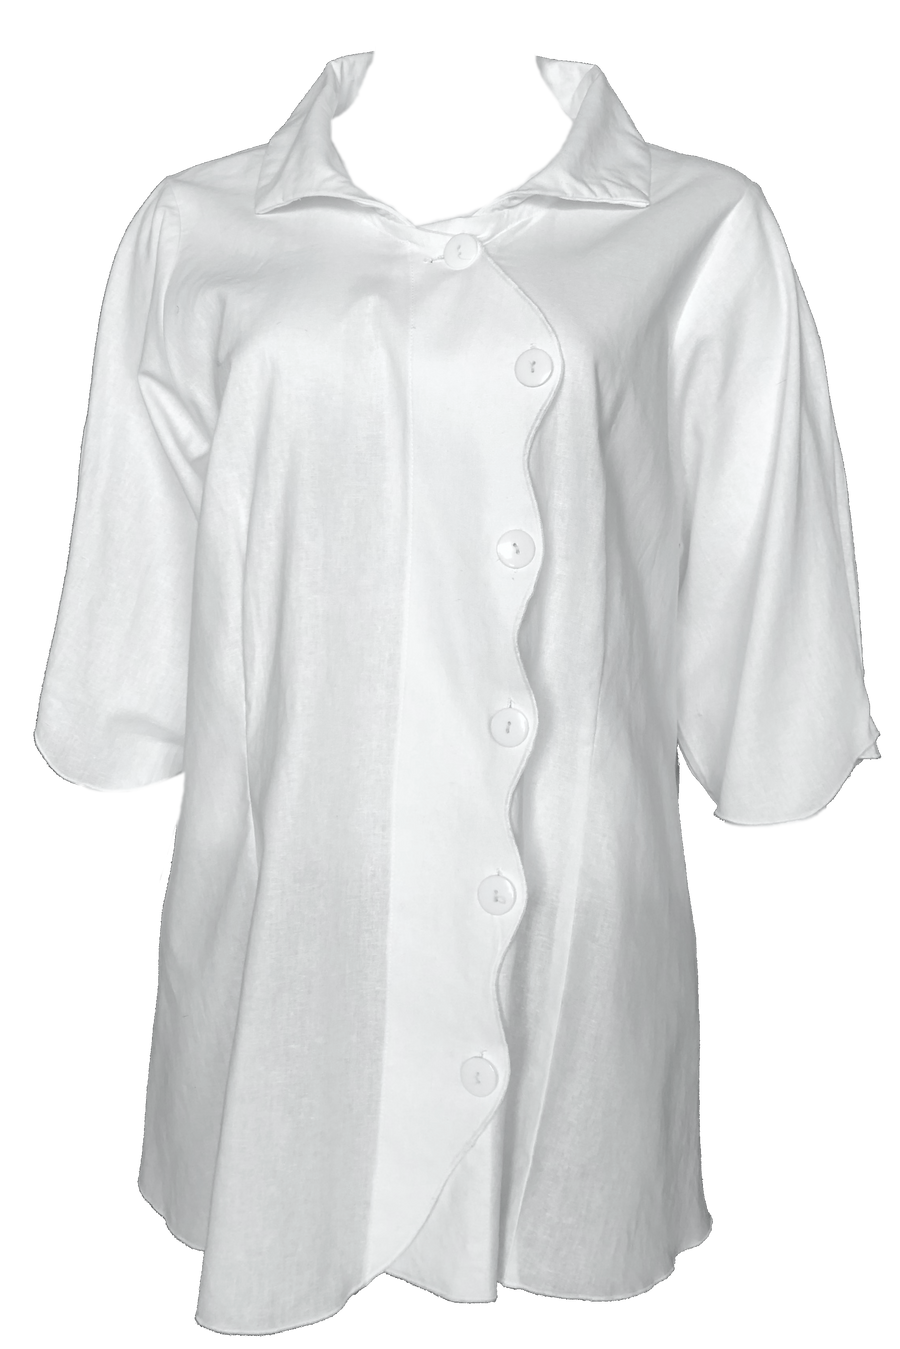 Serpent shirt: White linen